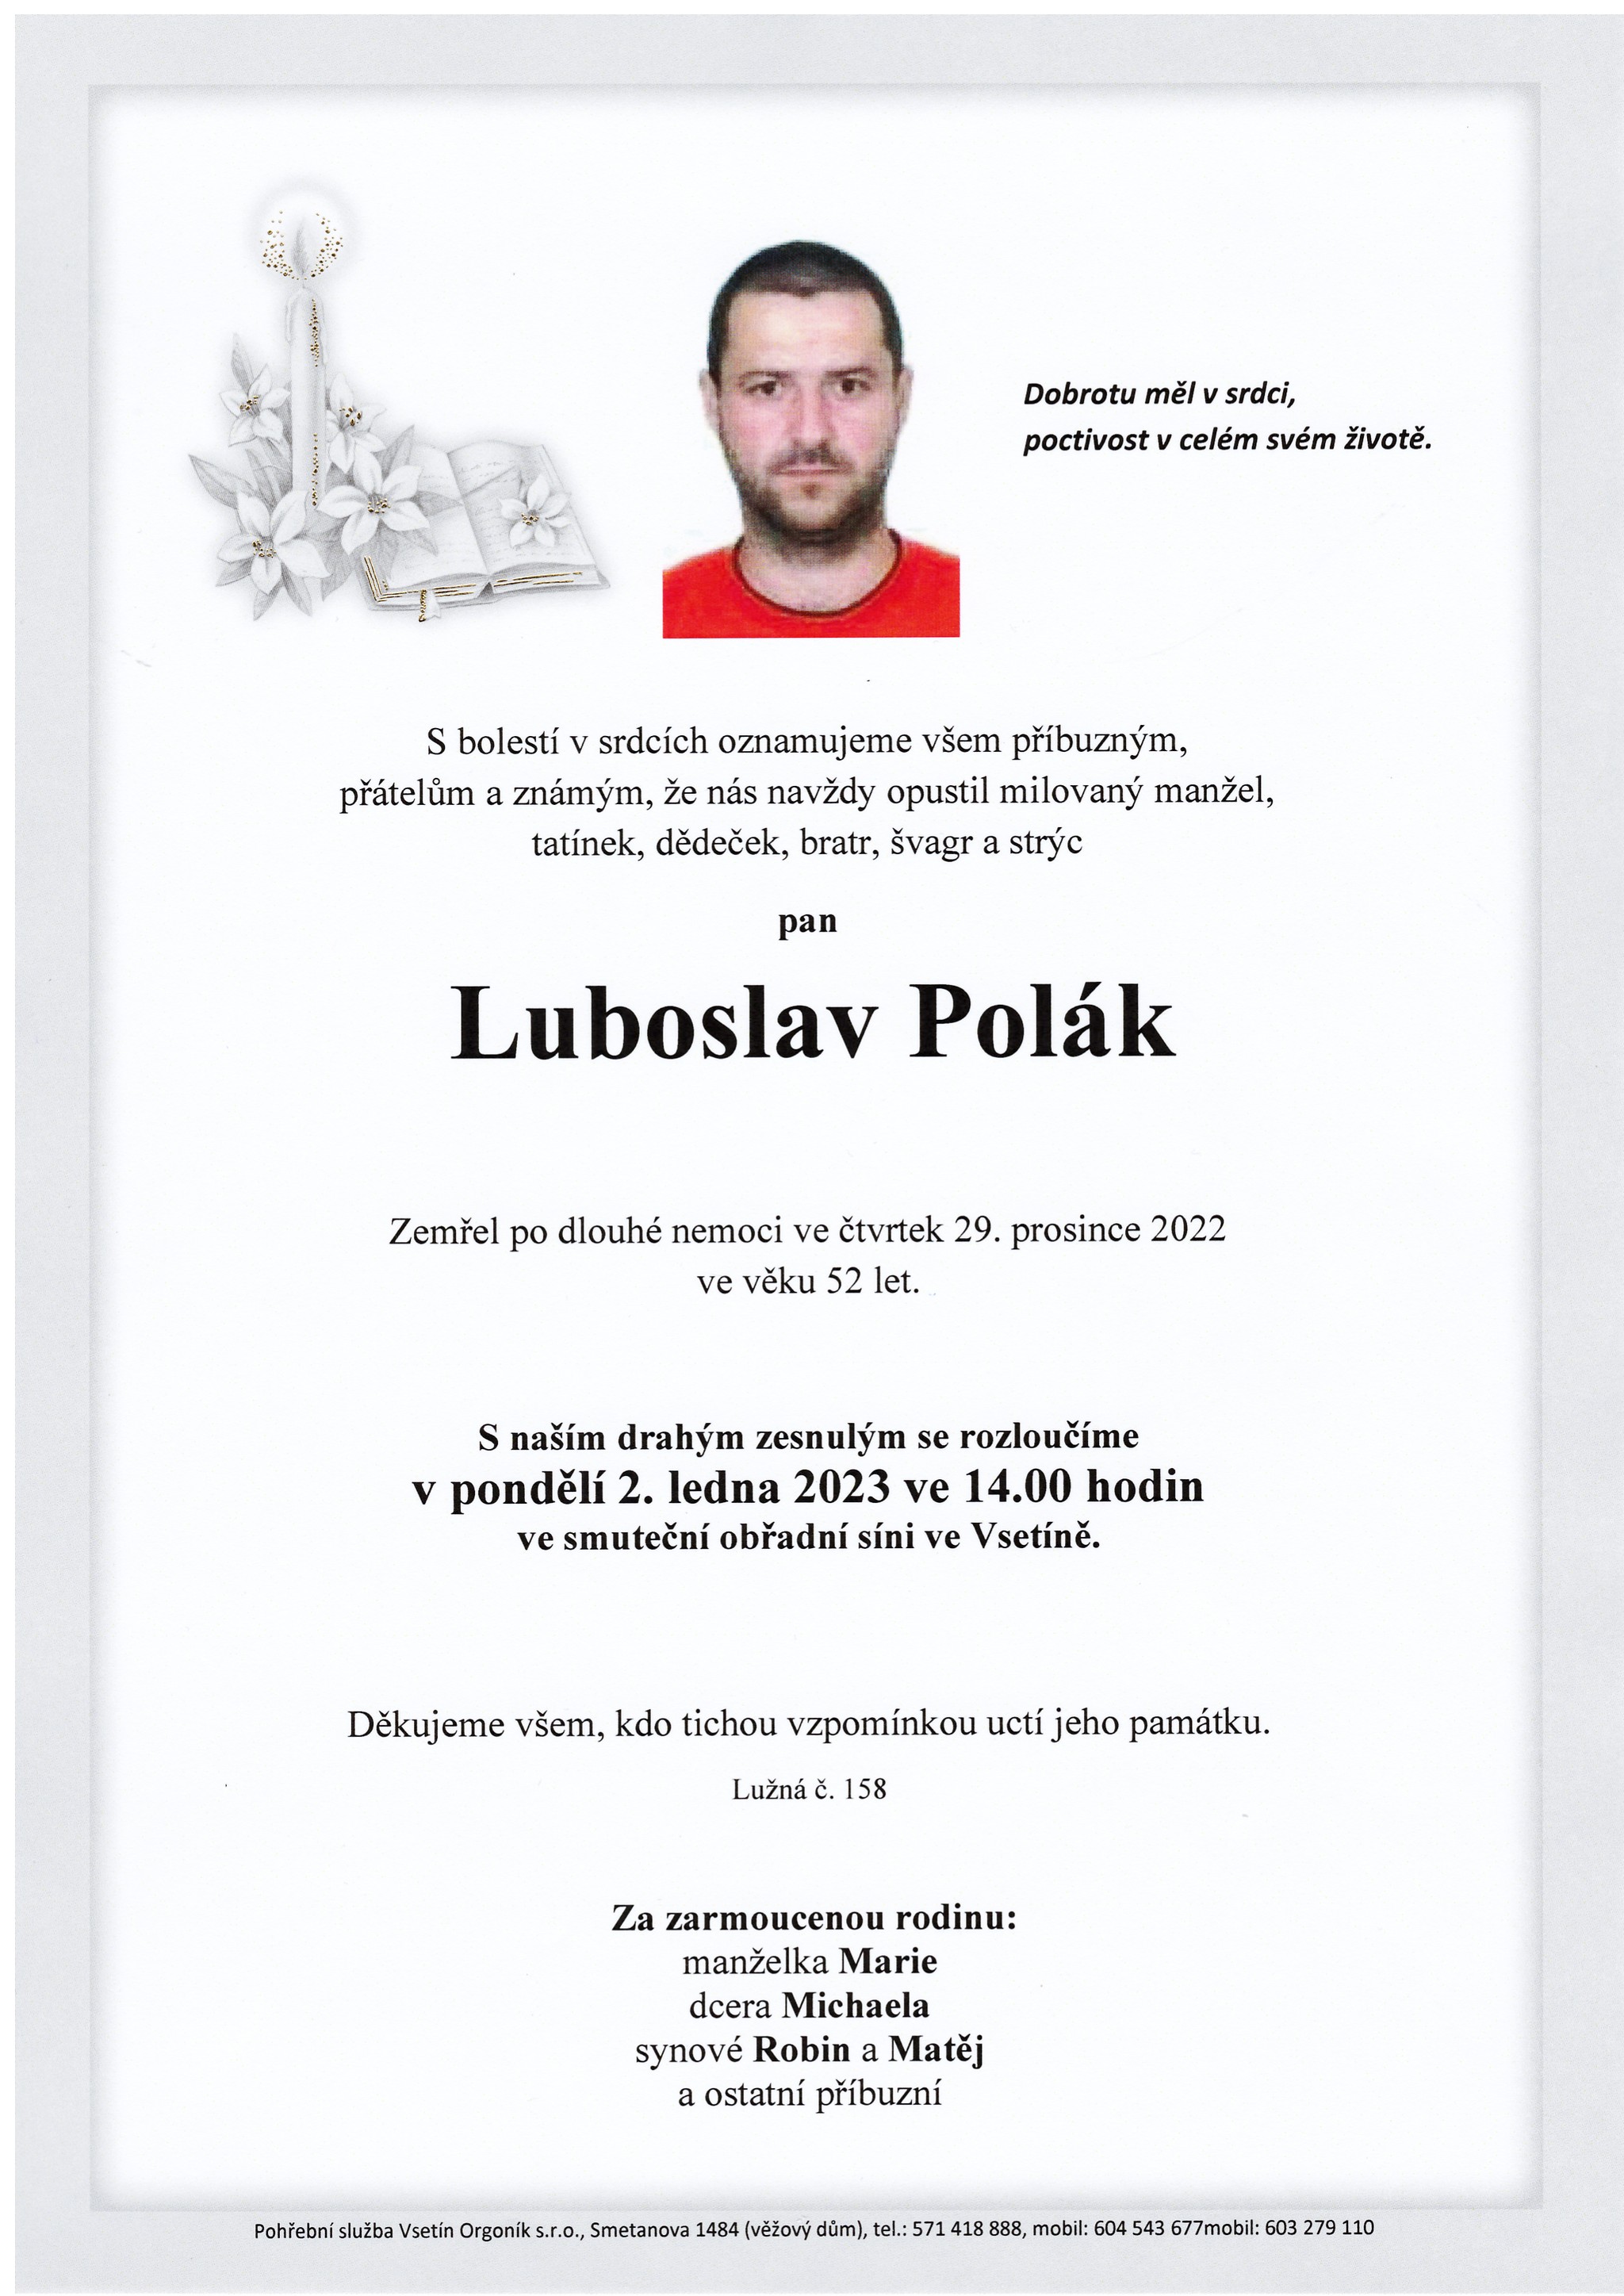 Luboslav Polák